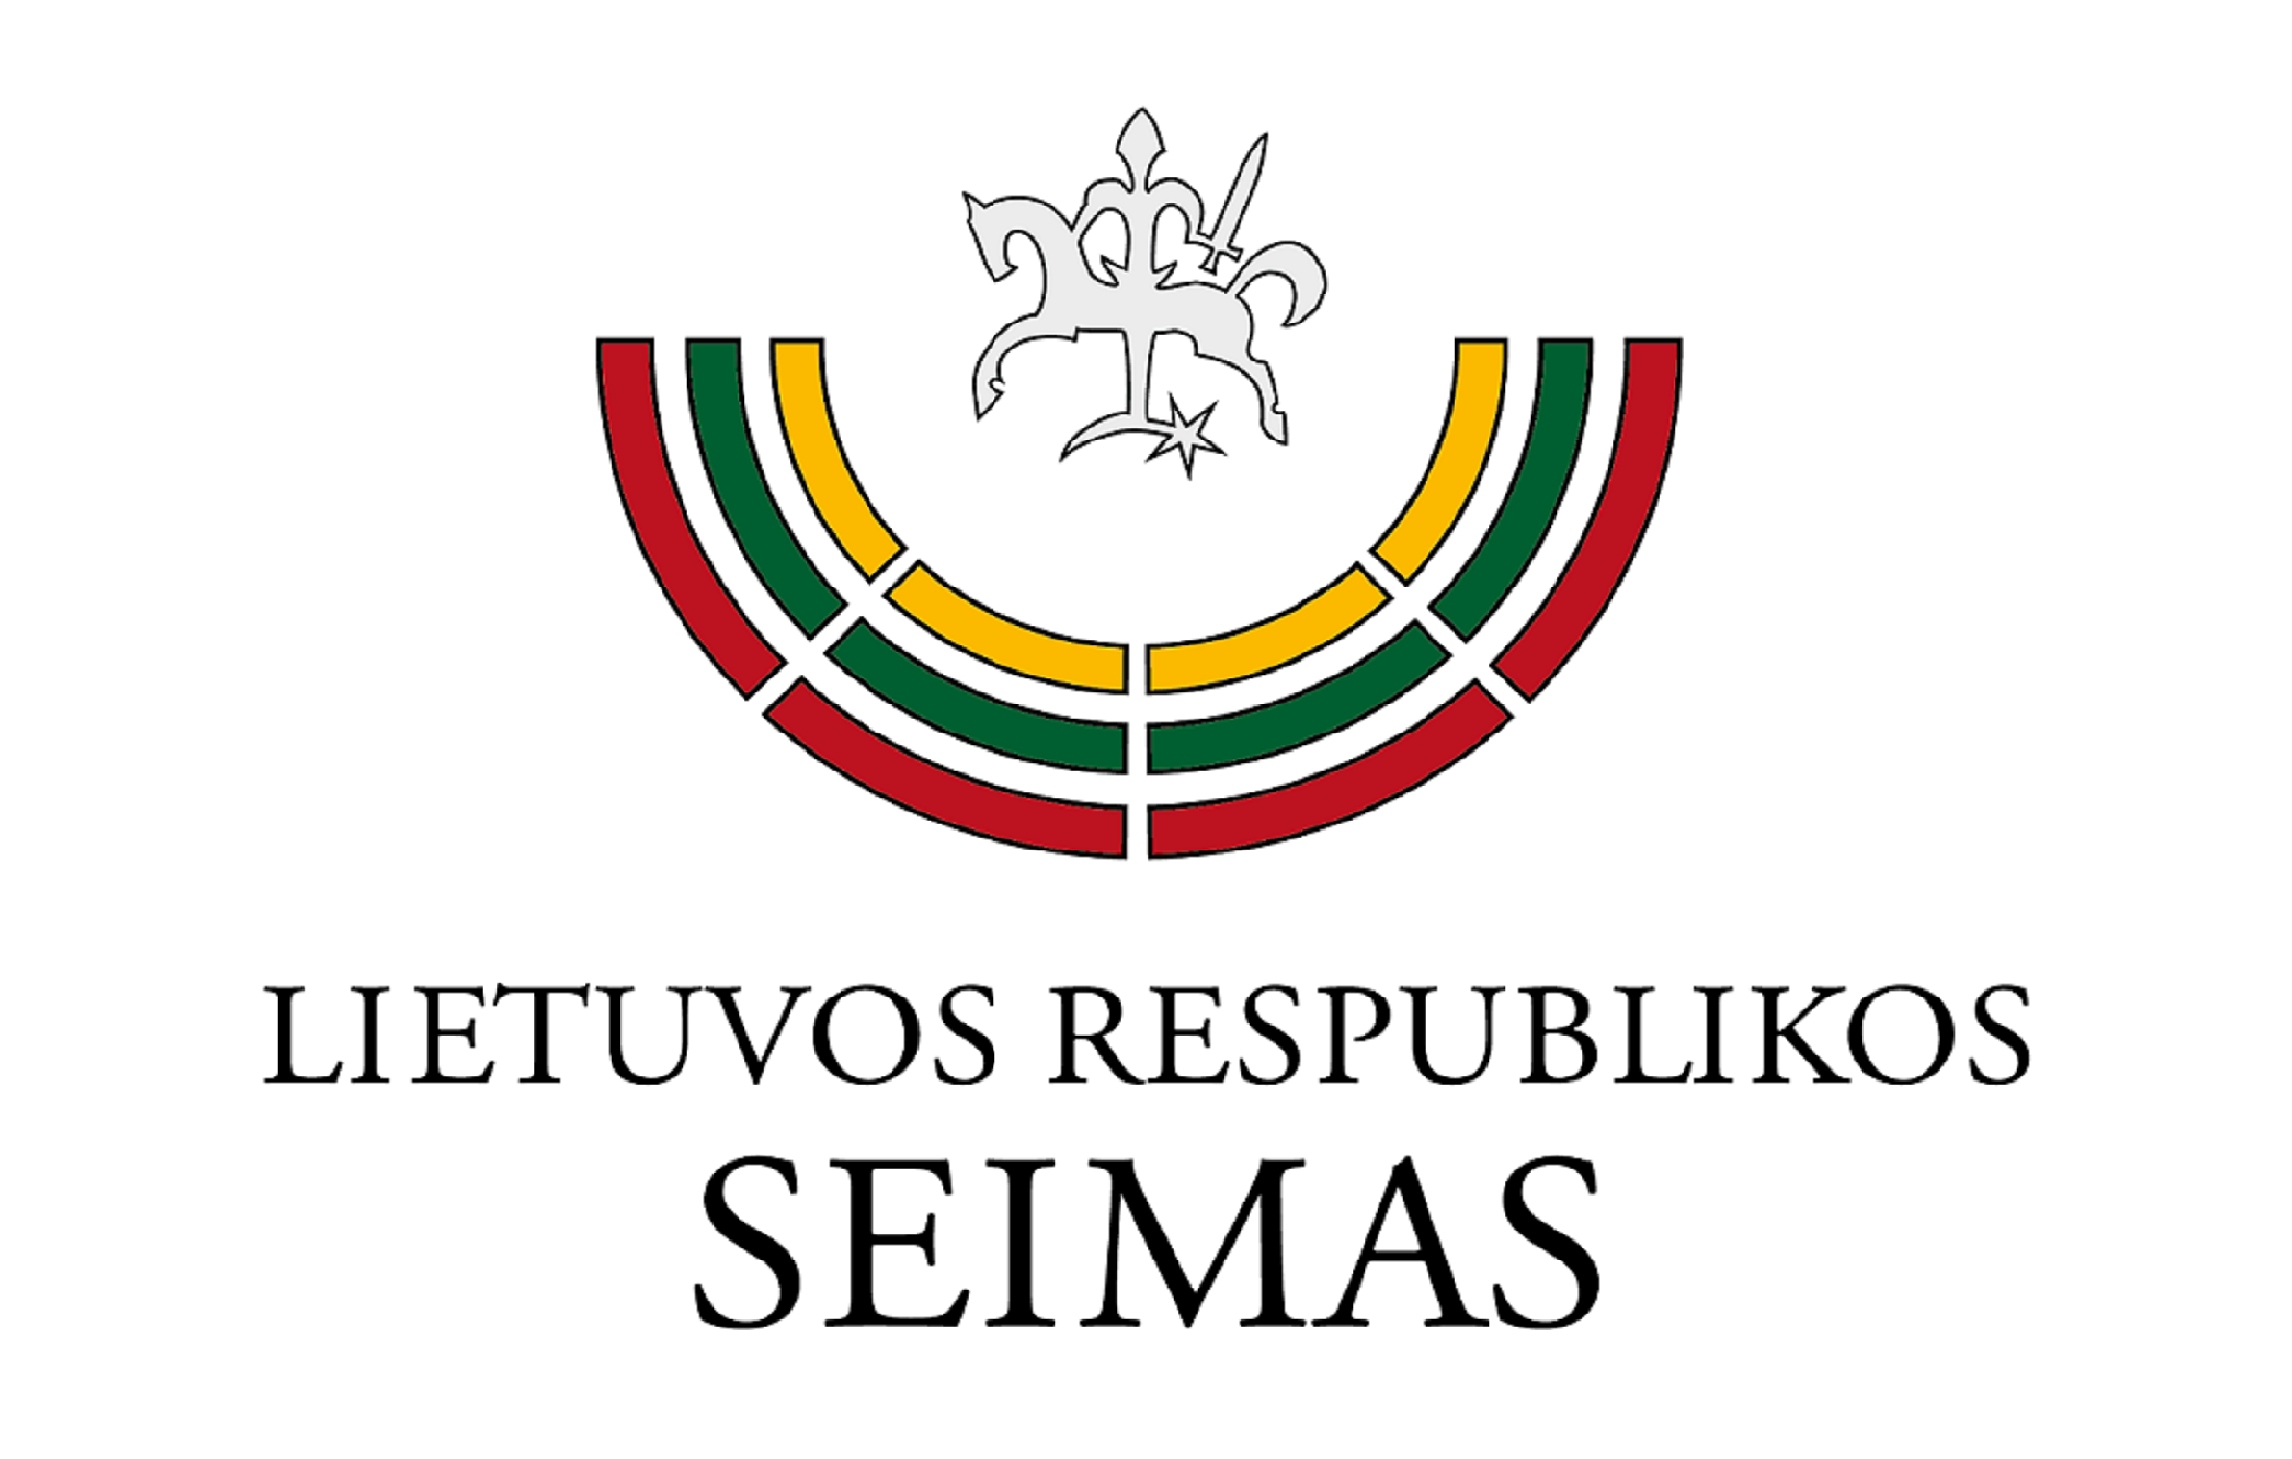 Página principal de la web del Comité para el Futuro de Lituania